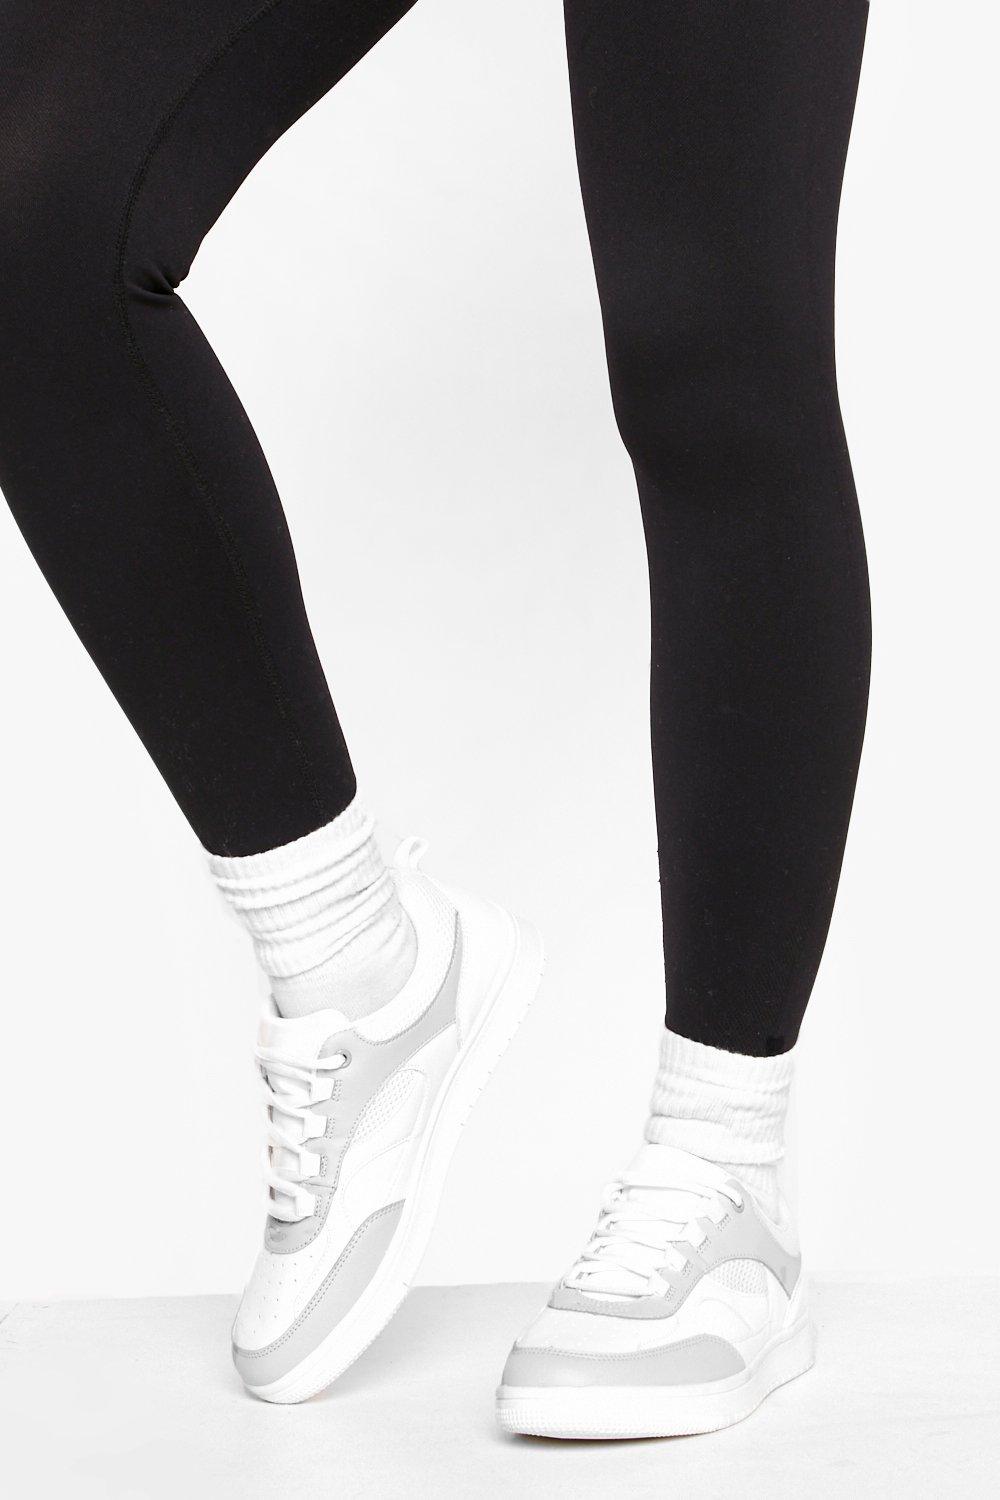  Grigio donna Scarpe da ginnastica basse con pannelli in rete a contrasto, Grigio moda abbigliamento - immagine 0